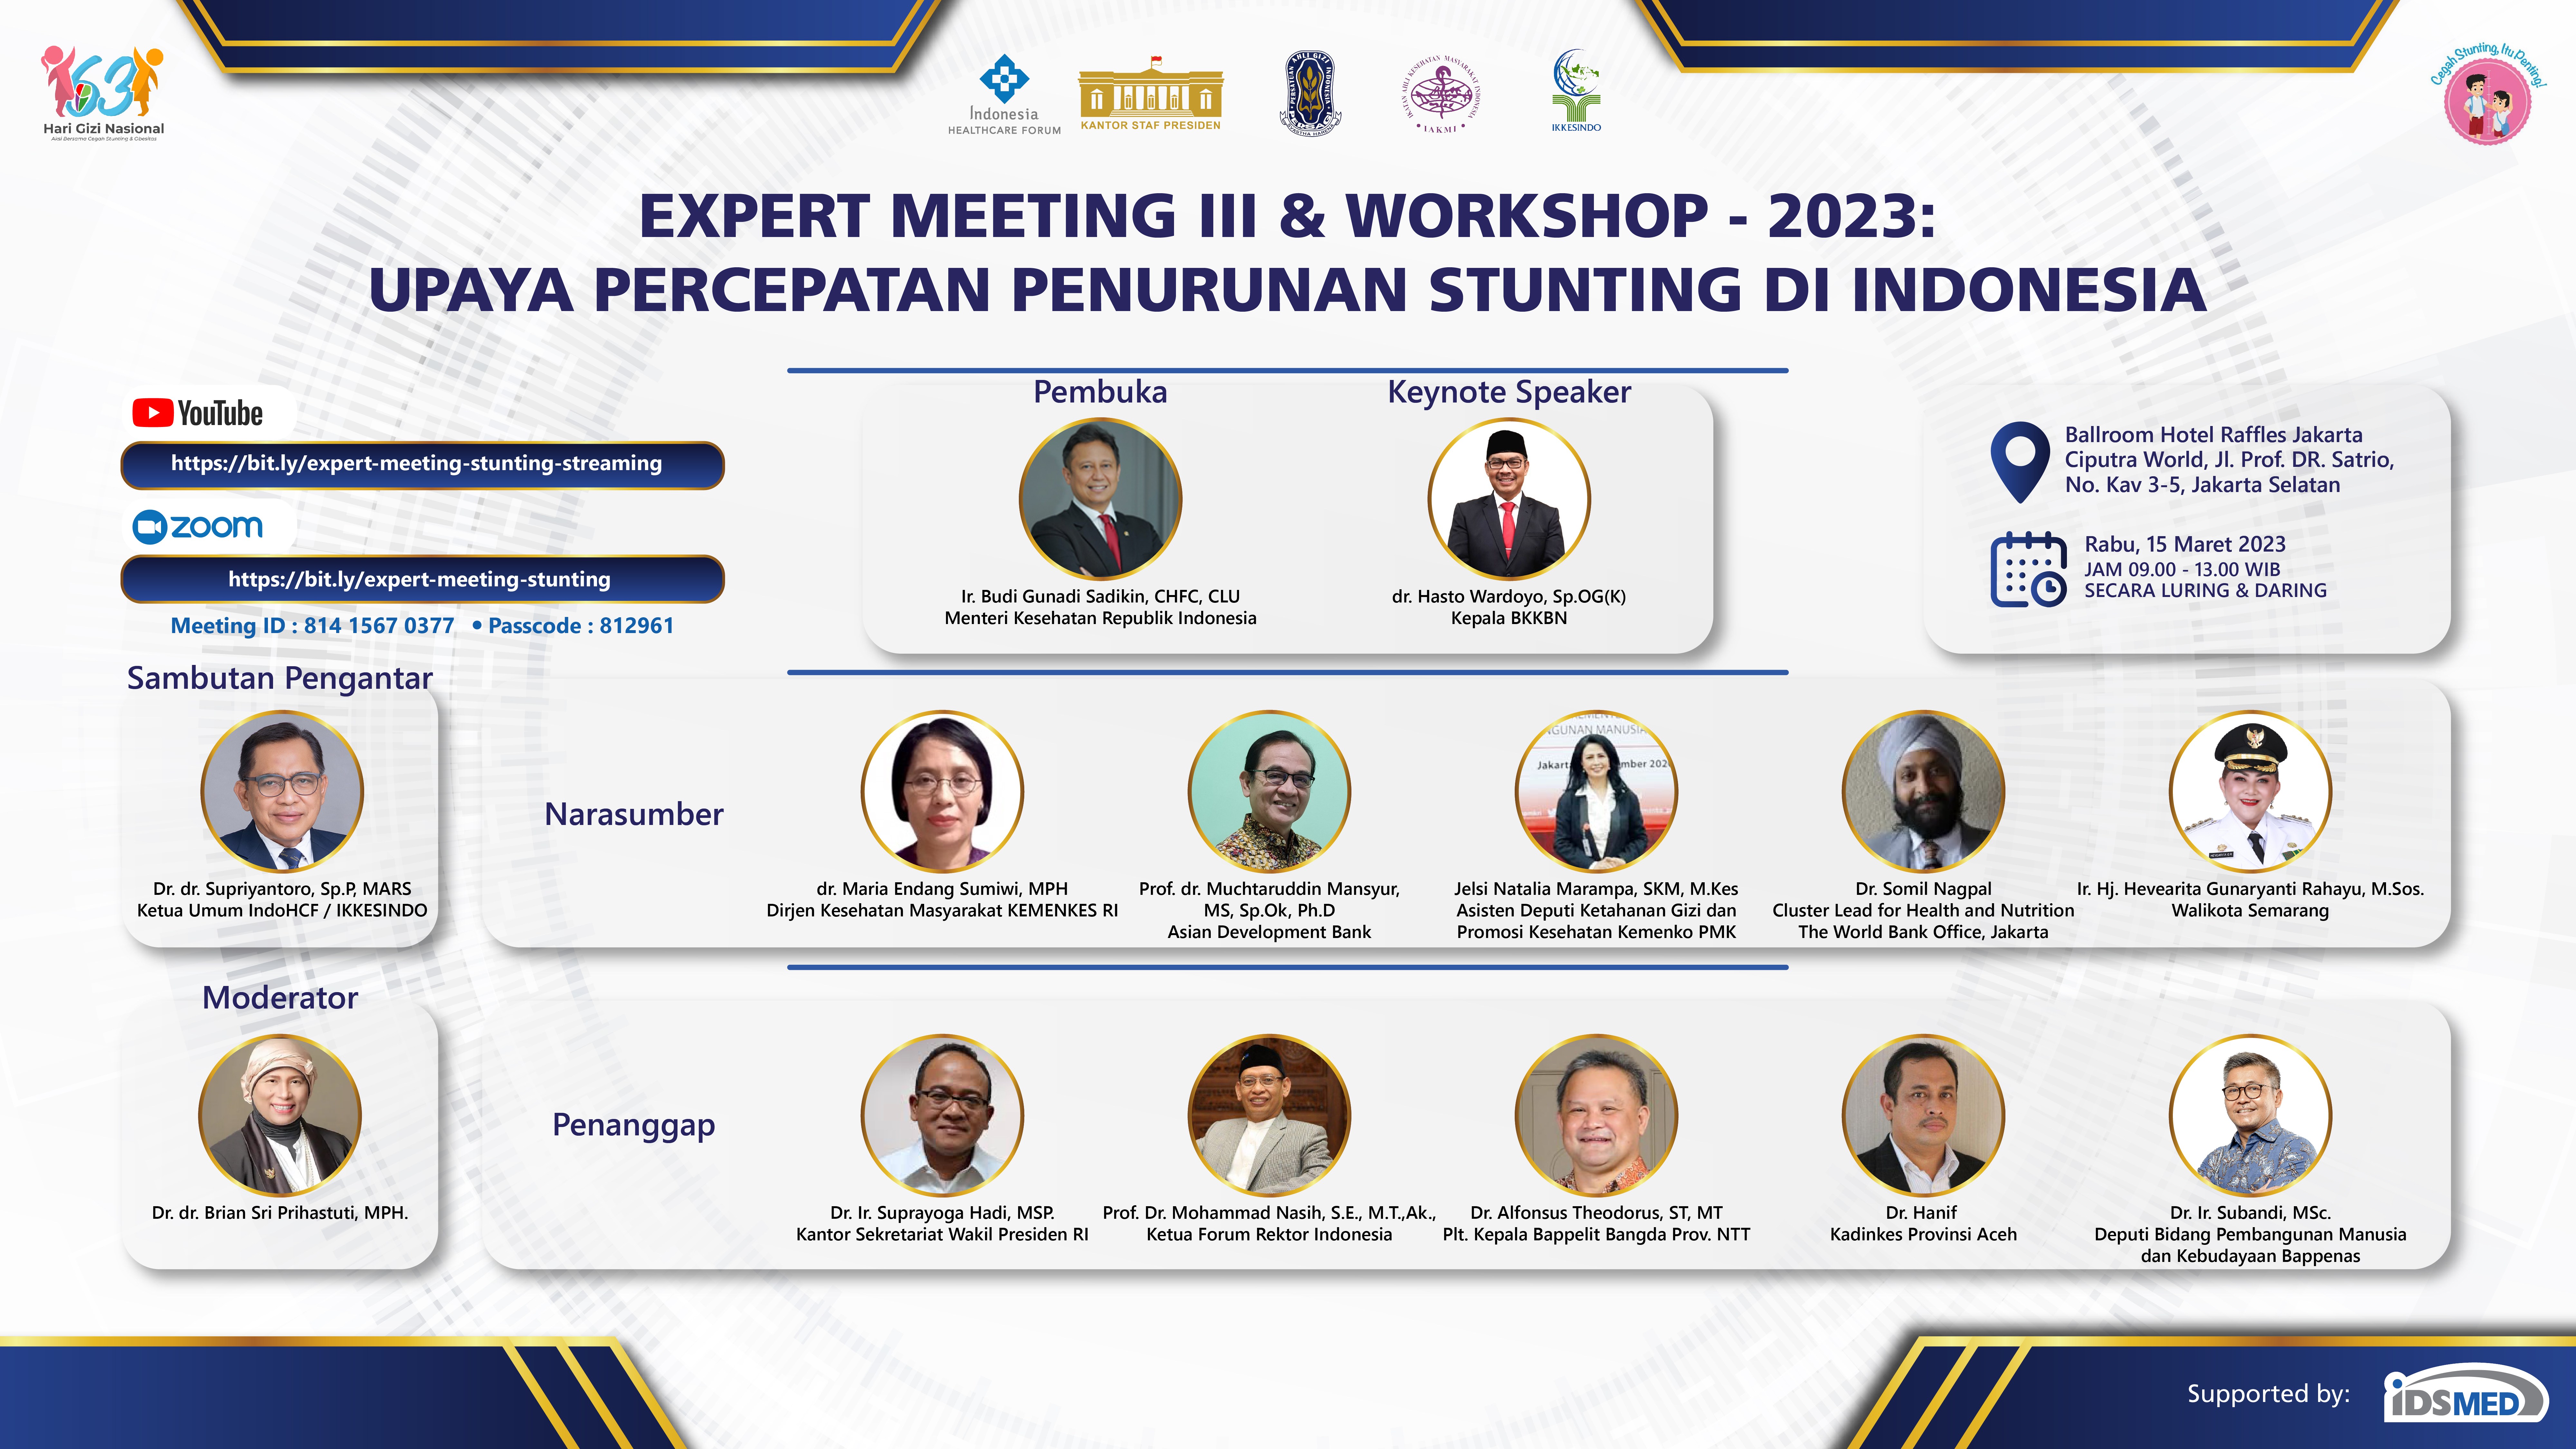 EXPERT MEETING III & WORKSHOP TENTANG UPAYA PERCEPATAN PENURUNAN STUNTING DI INDONESIA